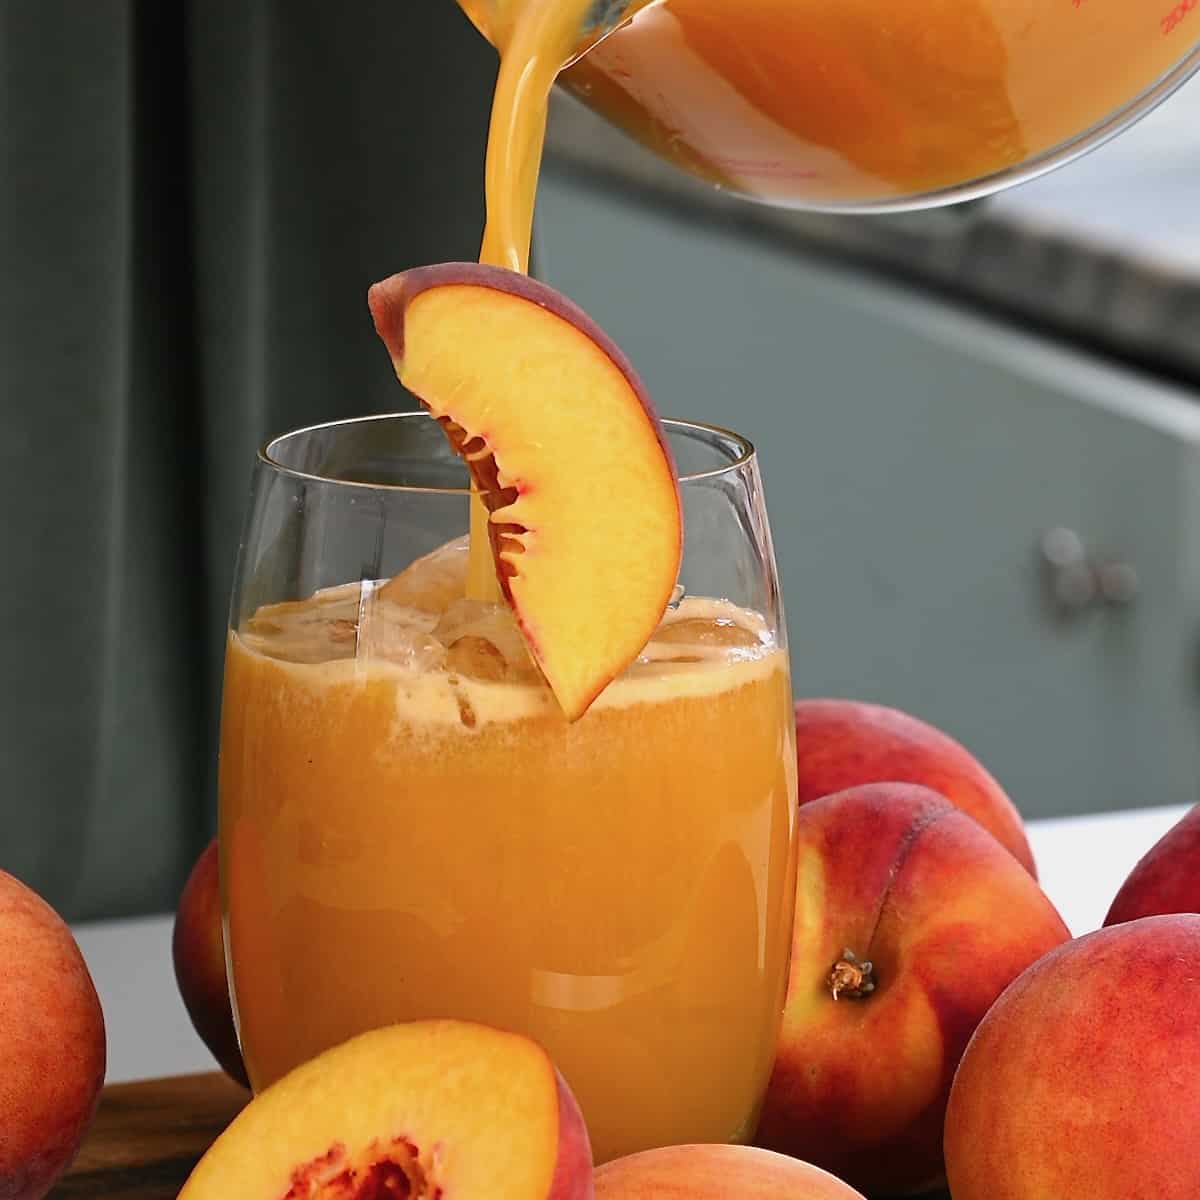 Organic Peach Apricot Nectar Tea